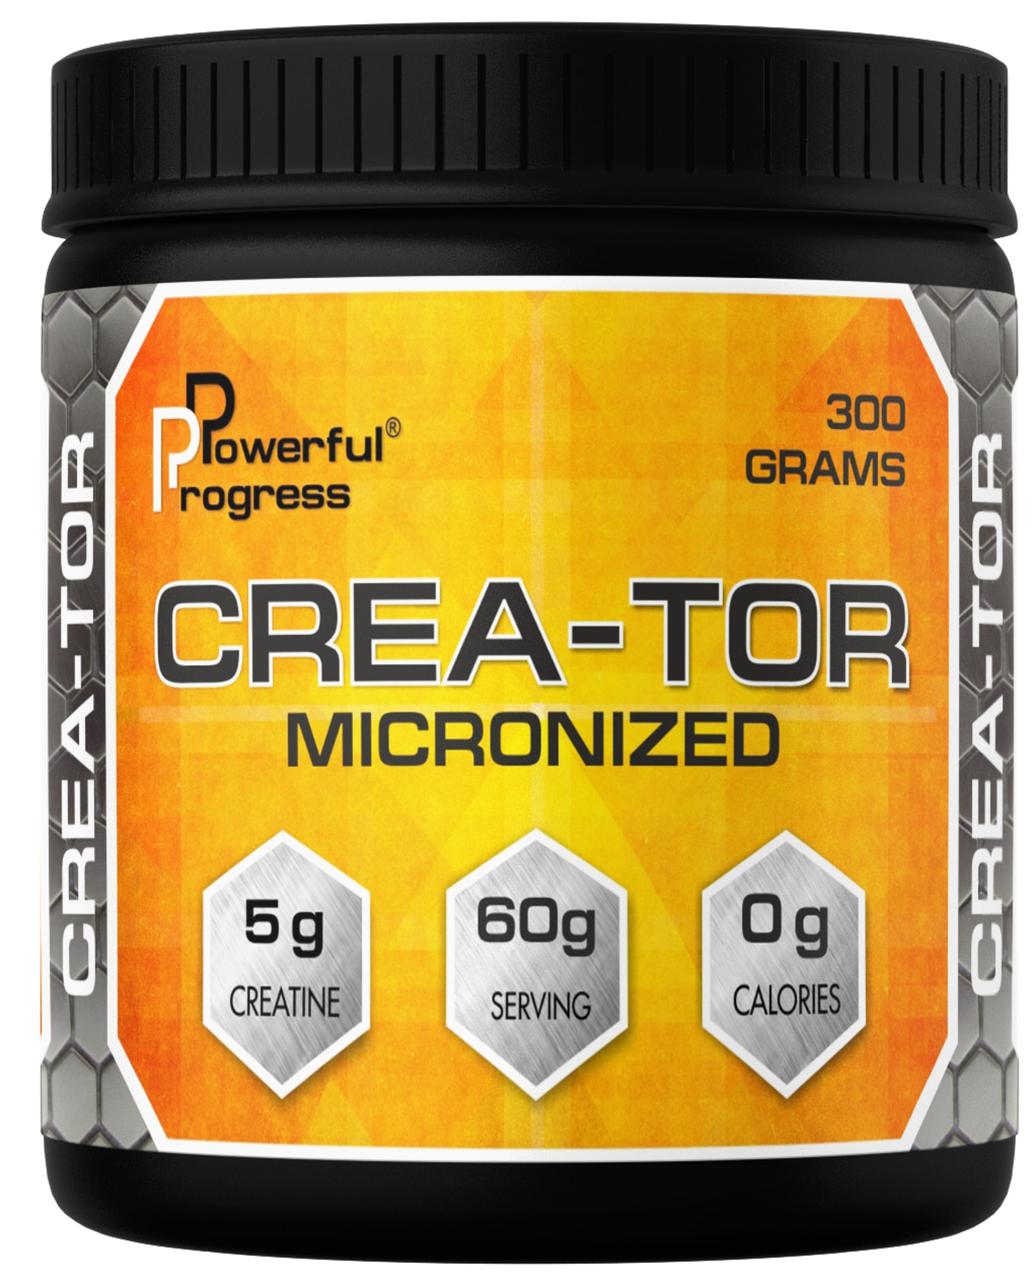 Crea-Tor Micronized Powerful Progress 300 g,  мл, Powerful Progress. Креатин. Набор массы Энергия и выносливость Увеличение силы 